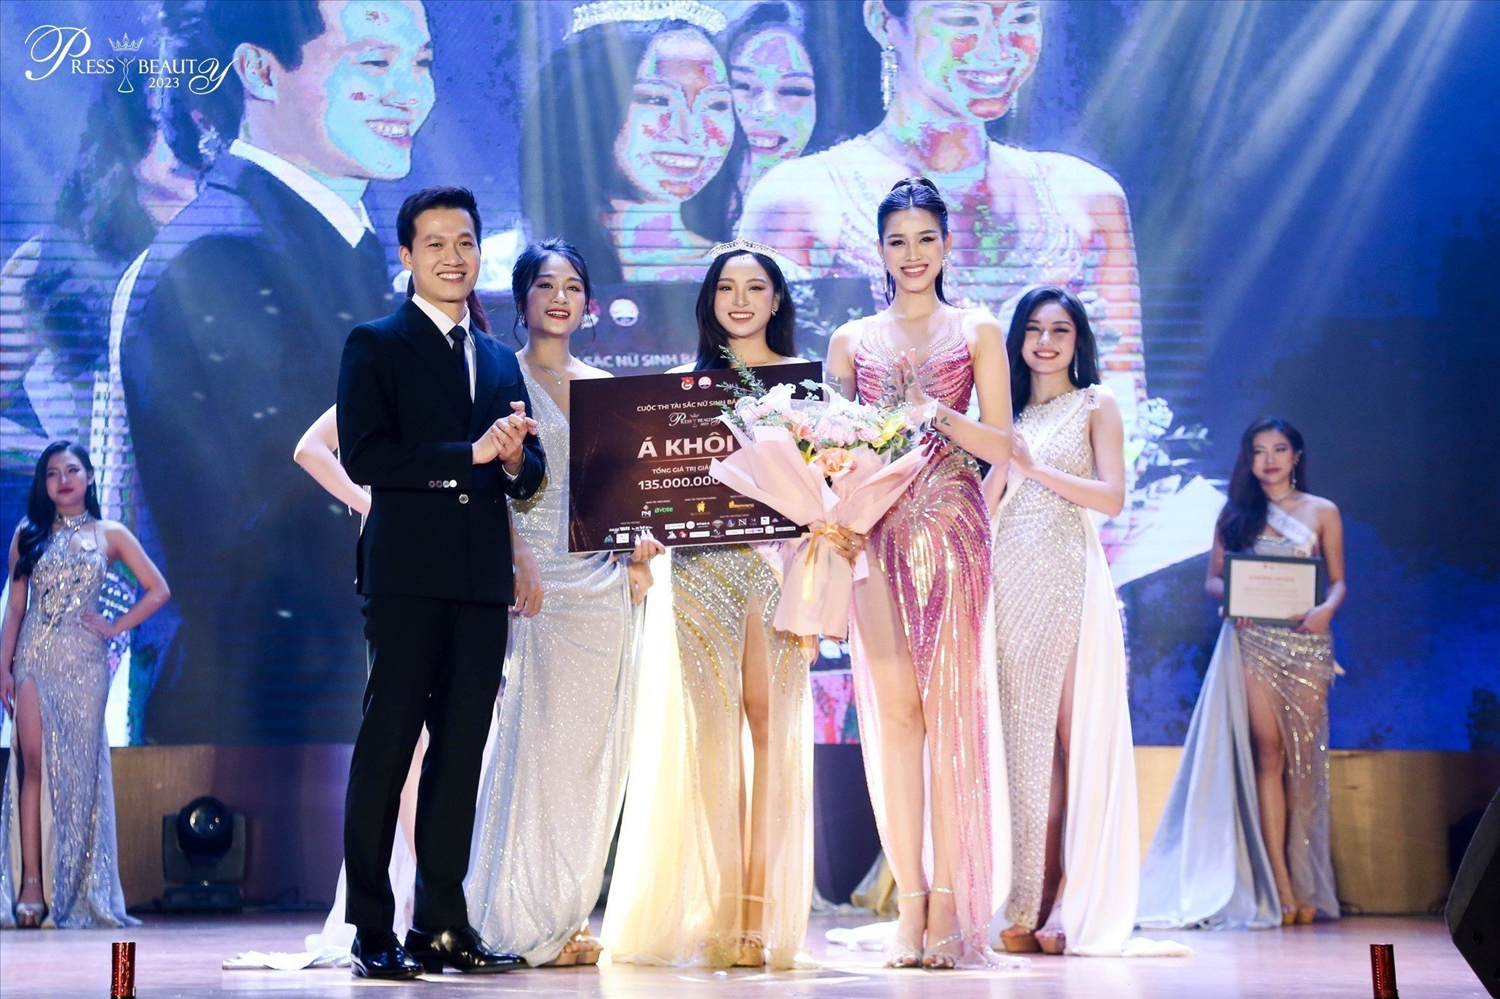 Danh hiệu Á khôi 2 của cuộc thi được trao thí sinh Hoàng Thị Ngọc Hà